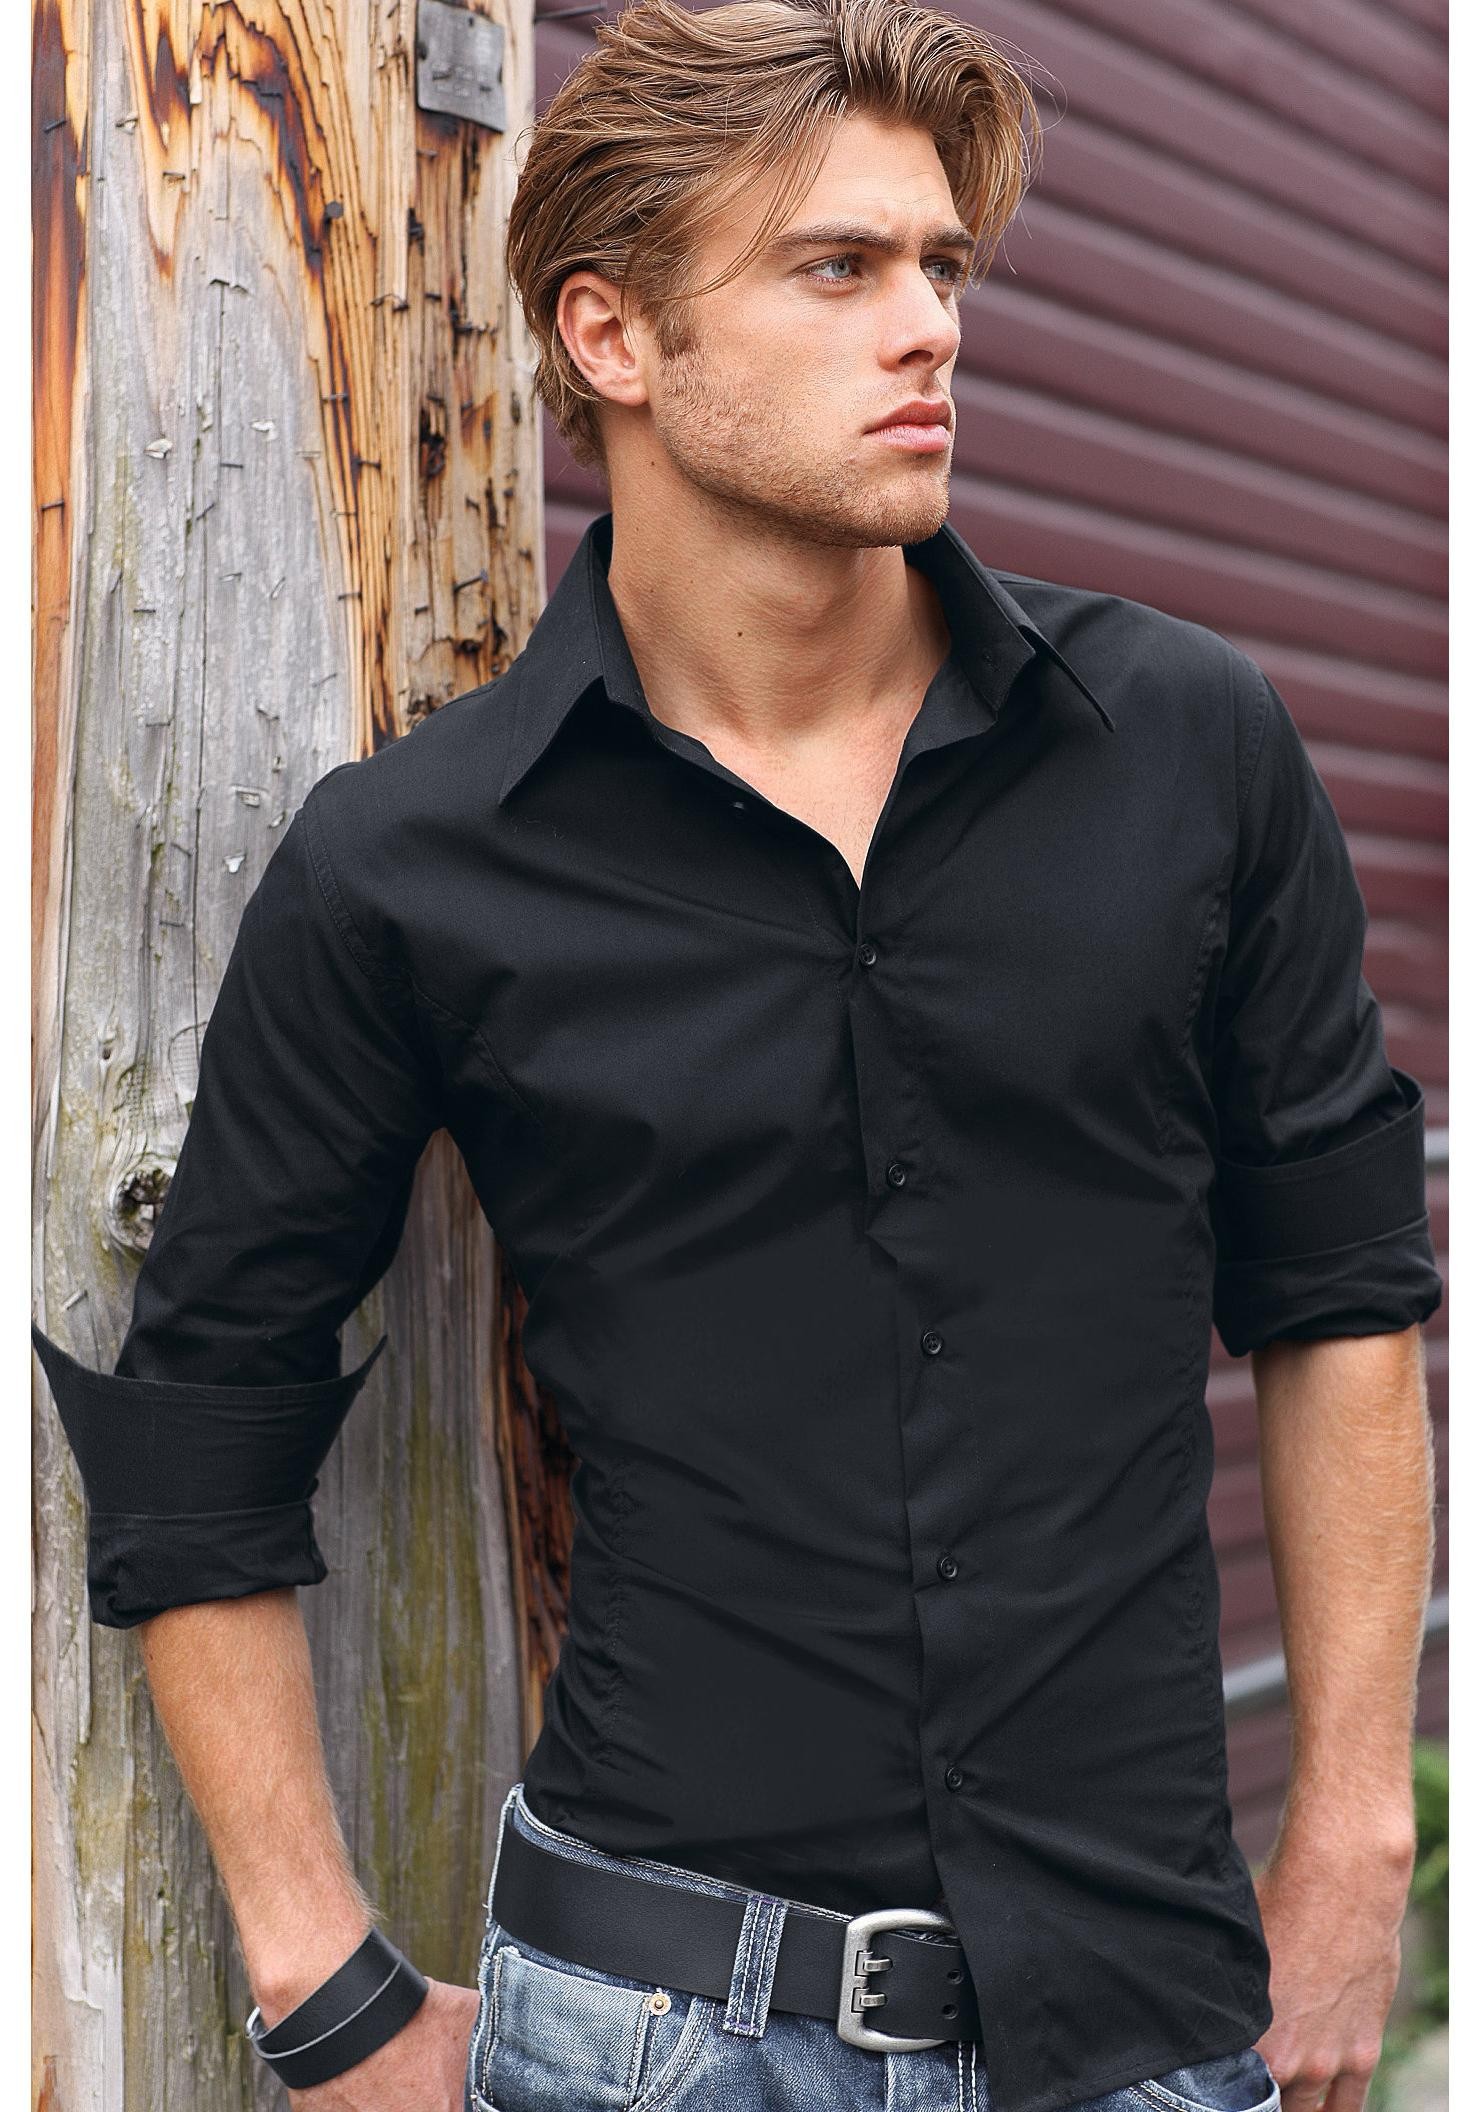 Мужское ти. Парень в черной рубашке. Мужчина в чёрной руюашке. Красивые мужские рубашки. Красивые рубашки для мужчин.